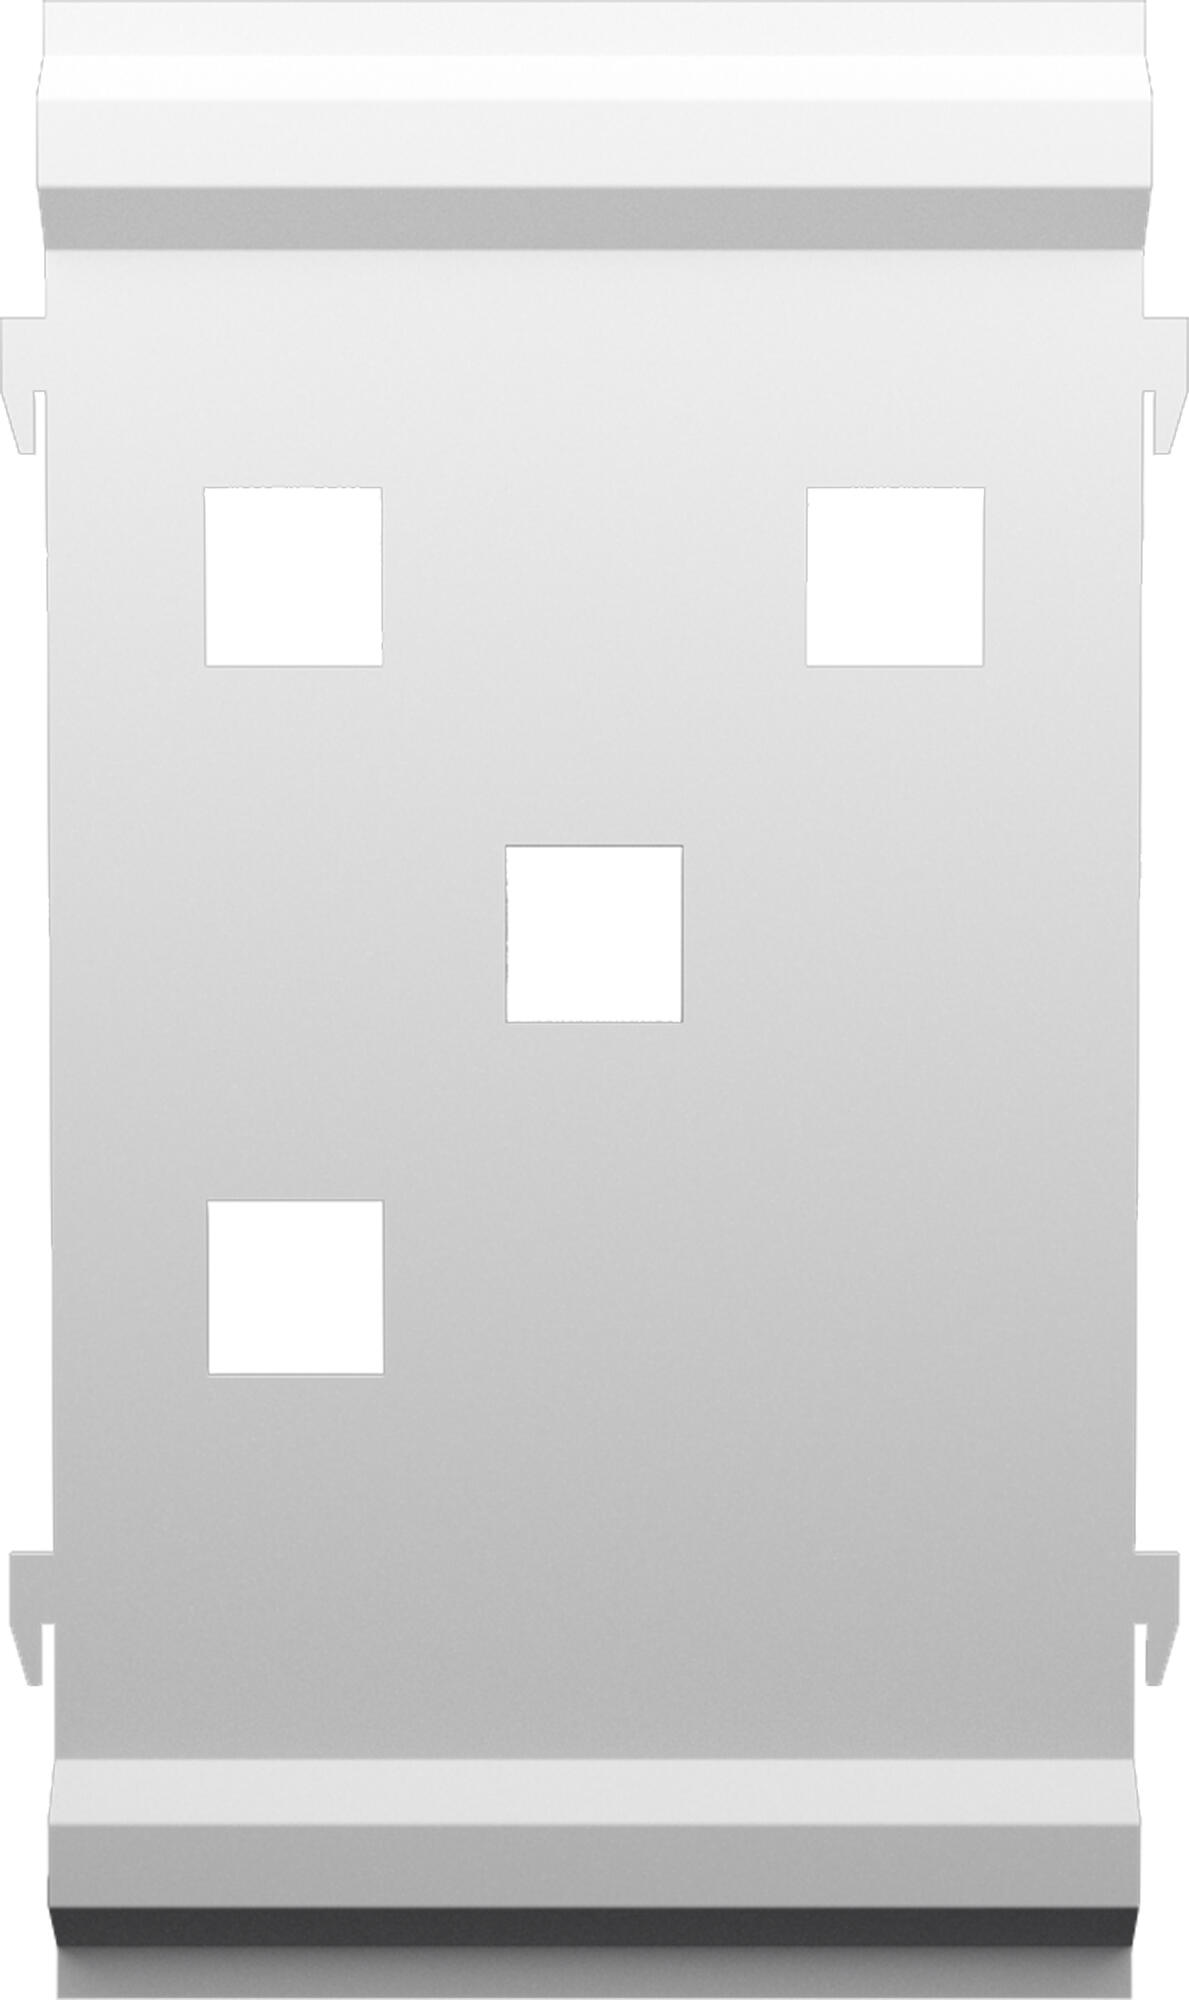 Panel remate valla acero galvanizado franja cuadros blanco 44x24,5 cm